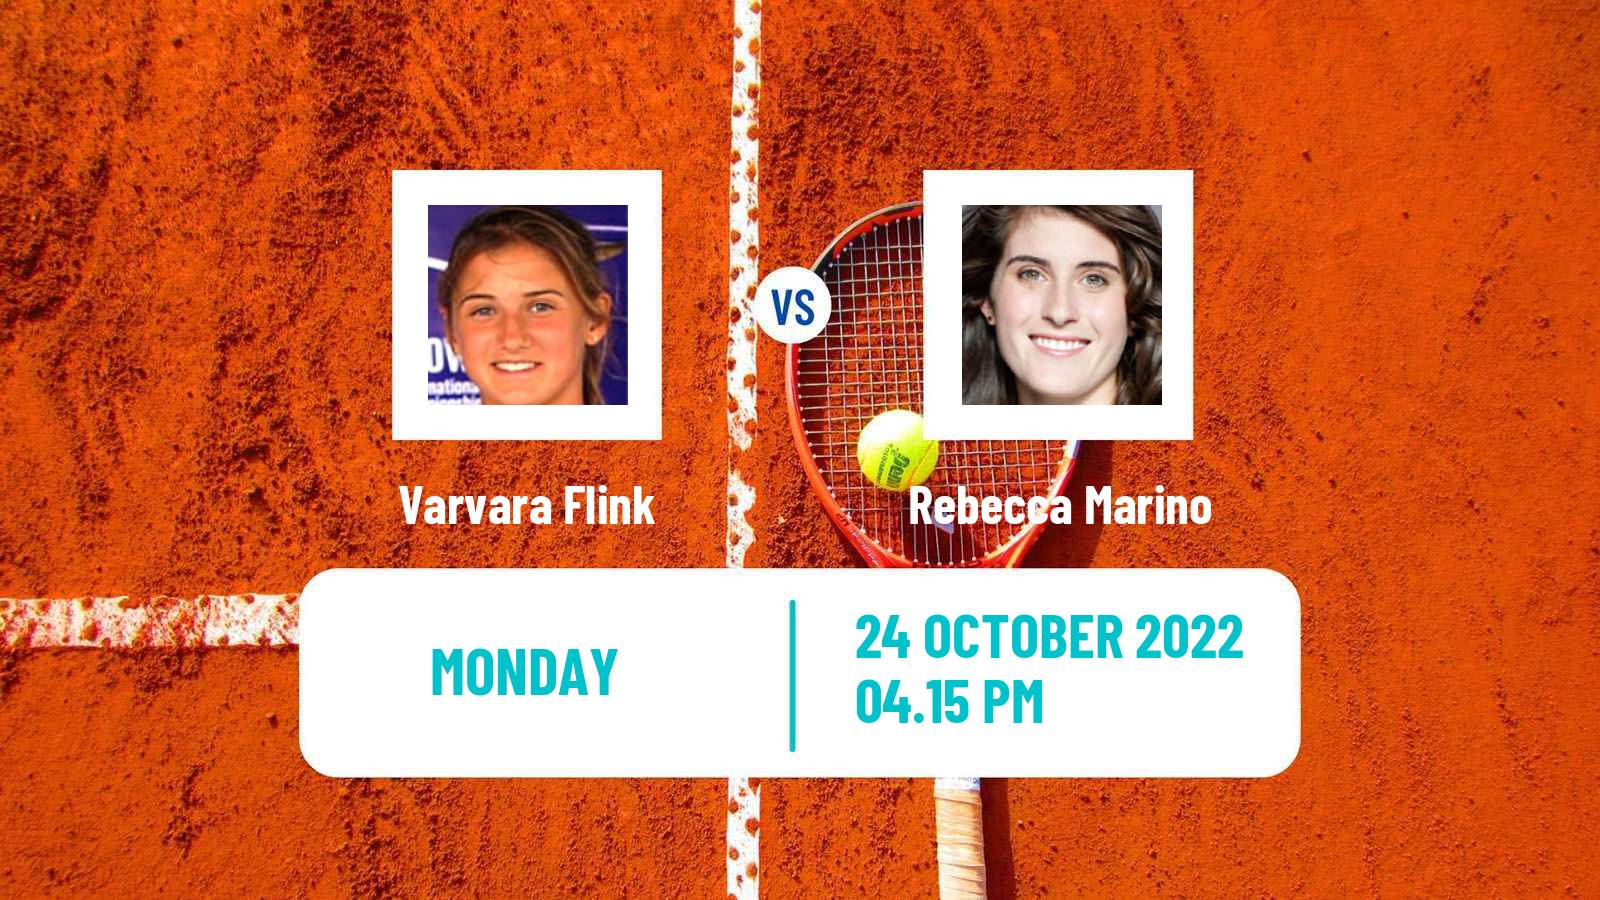 Tennis ATP Challenger Varvara Flink - Rebecca Marino